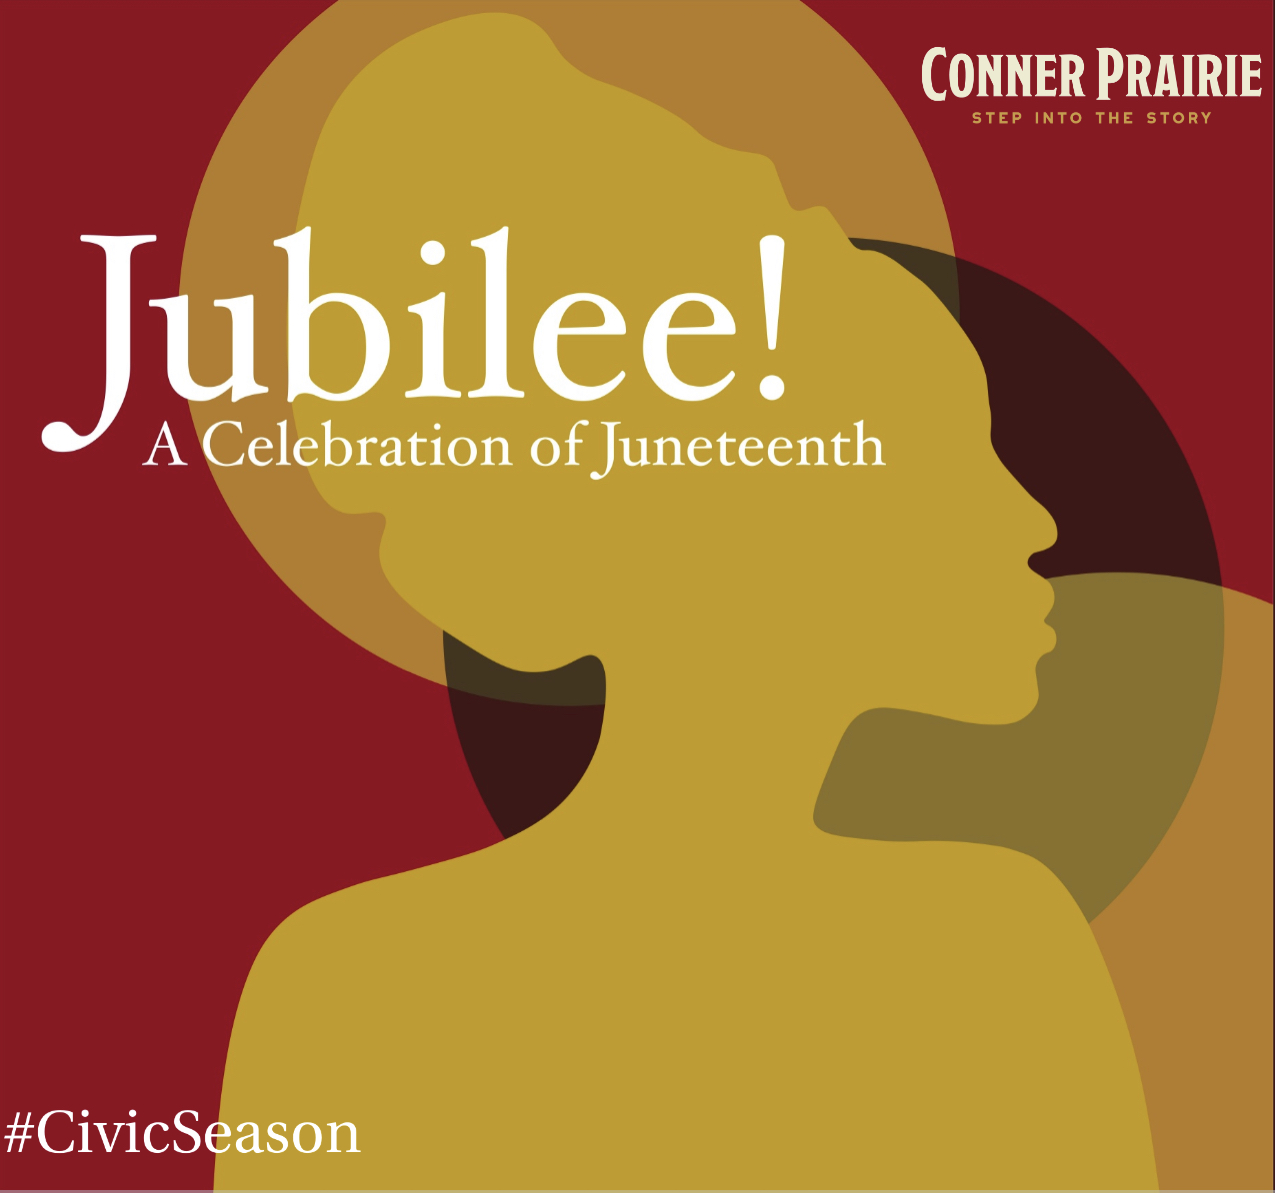 Jubilee!: A Celebration of Juneteenth